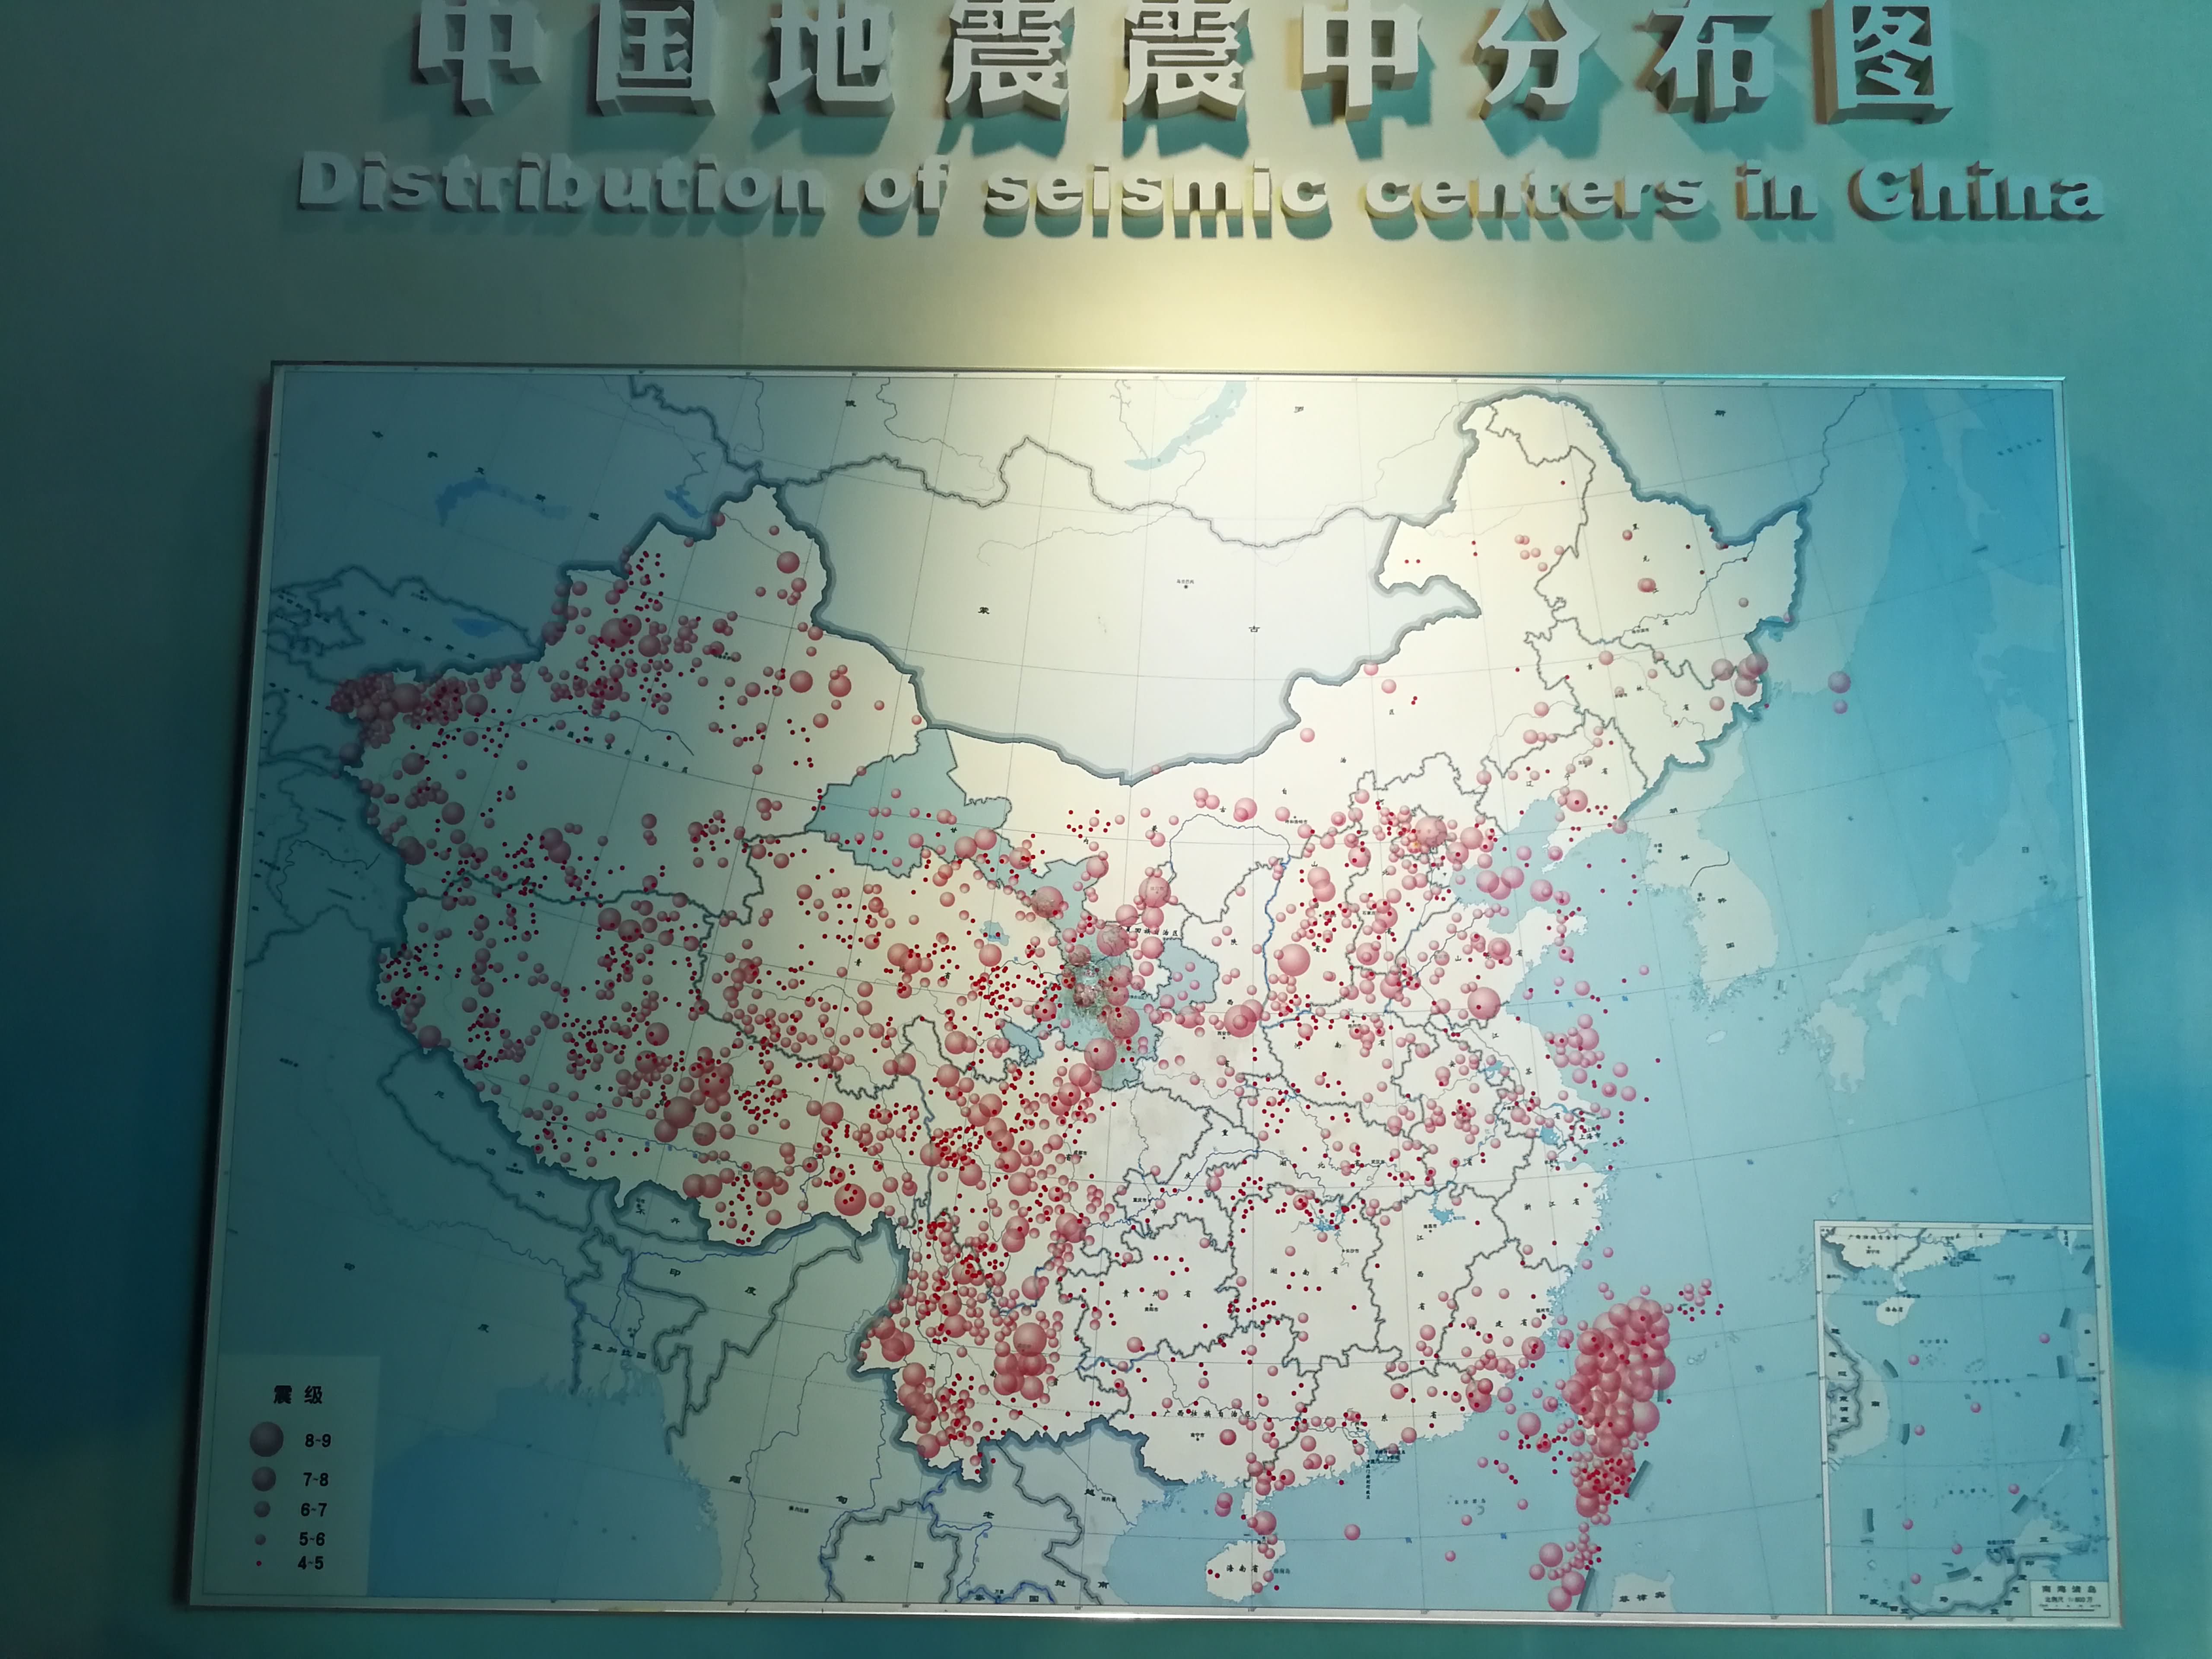 中国地震区划图高清图片